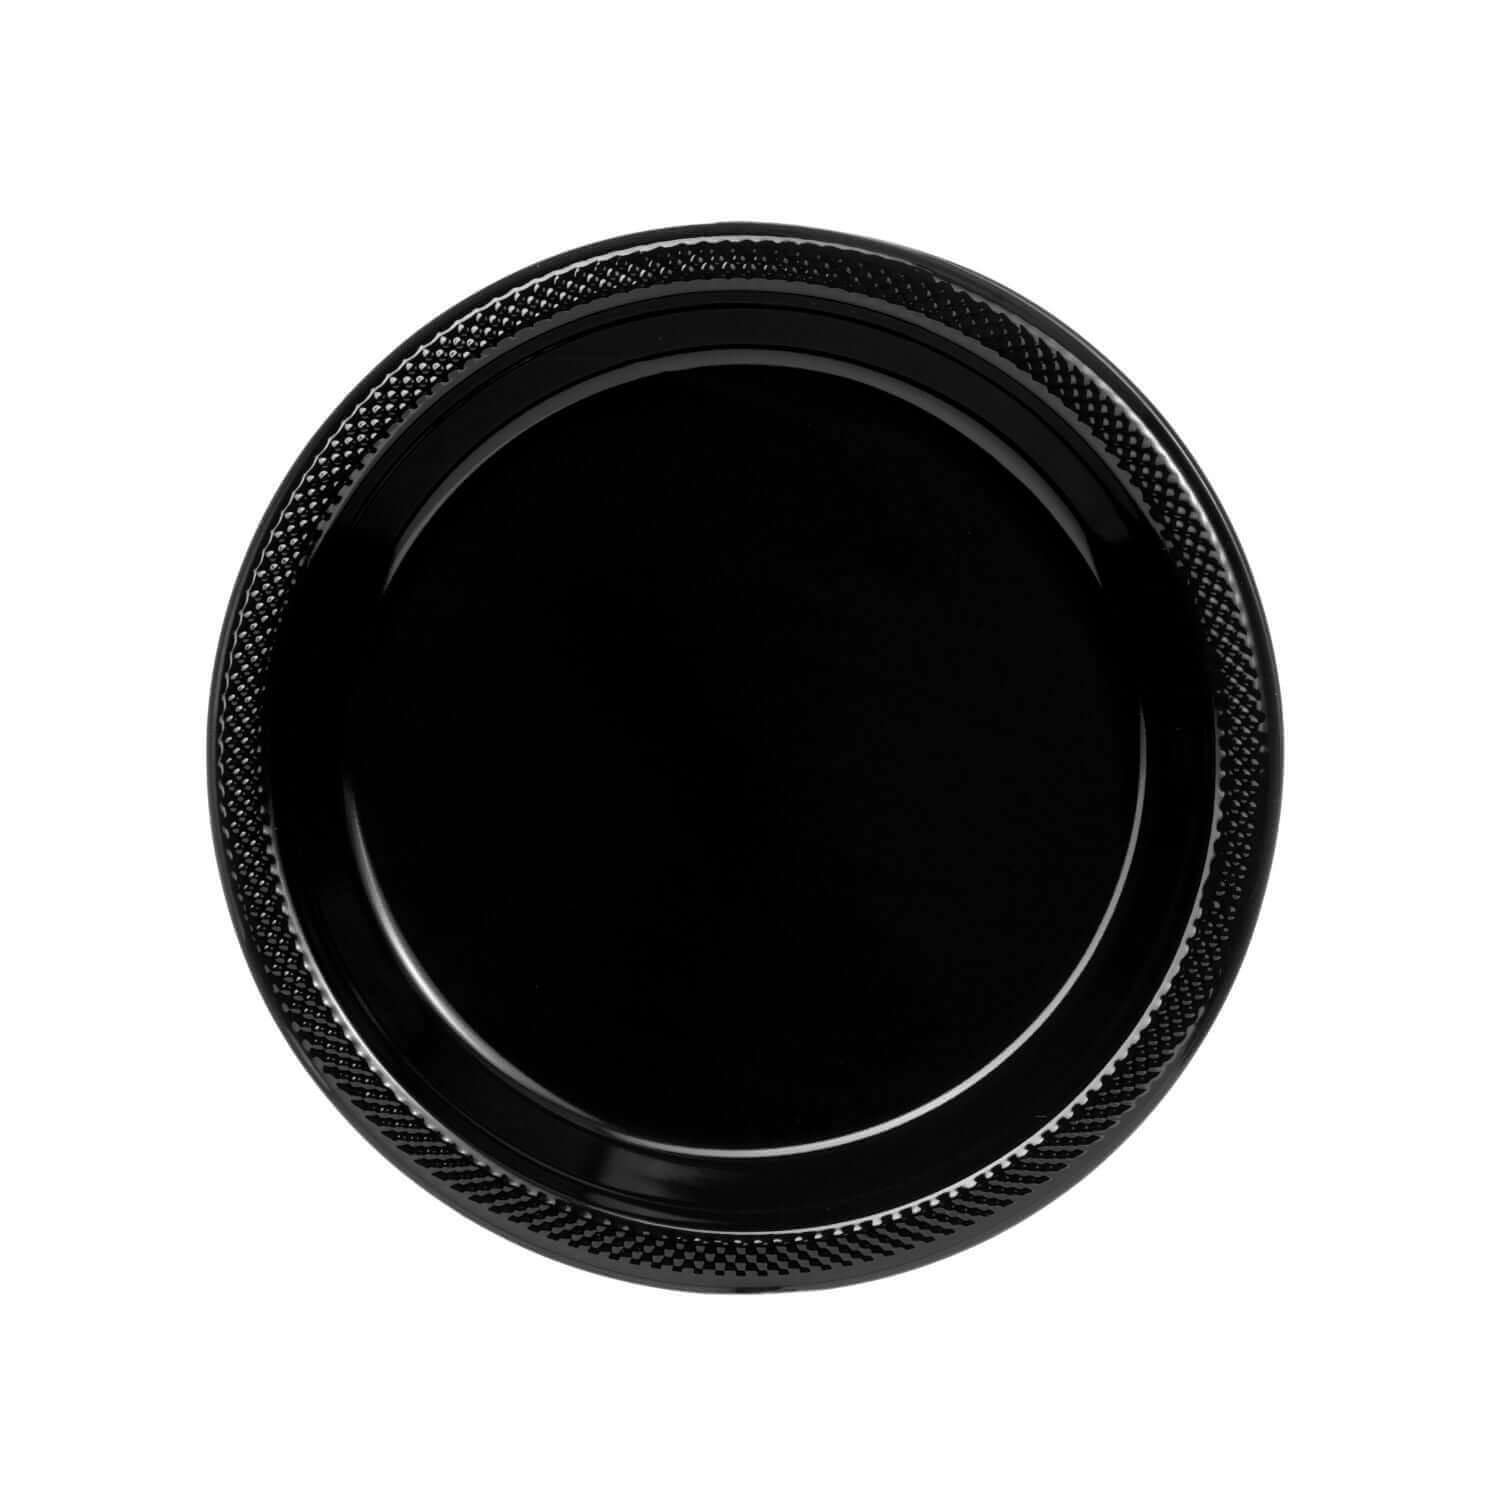 7" | Black Plastic Plates | 600 Count - Yom Tov Settings